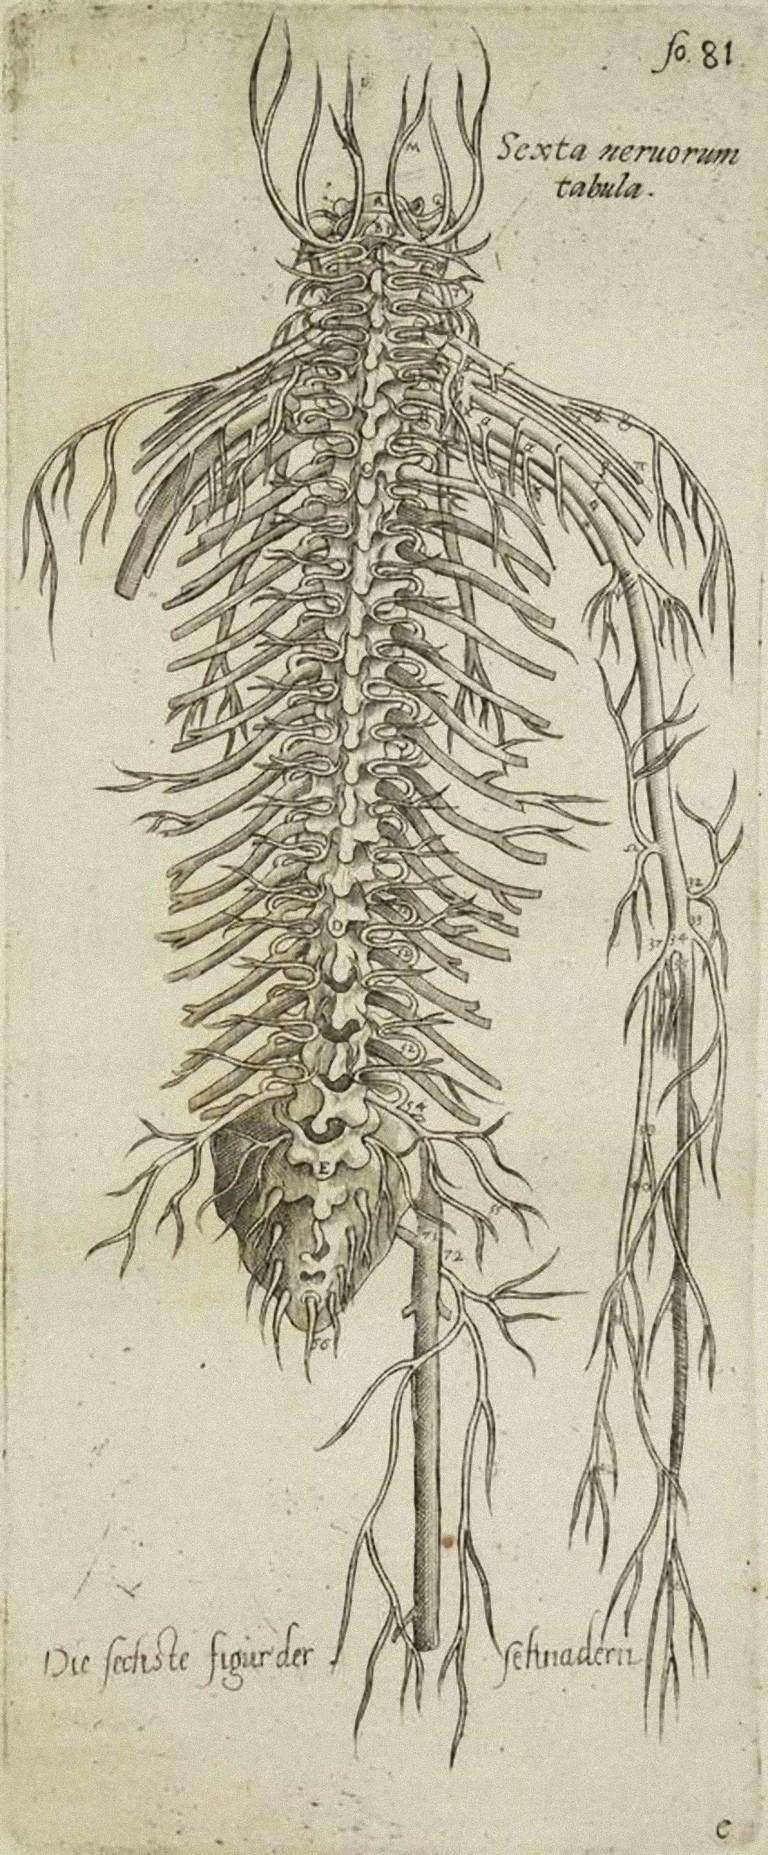 Andrea Vesalio Figurative Print - The Circulatory System - From "De Humani Corporis Fabrica"  - 1642